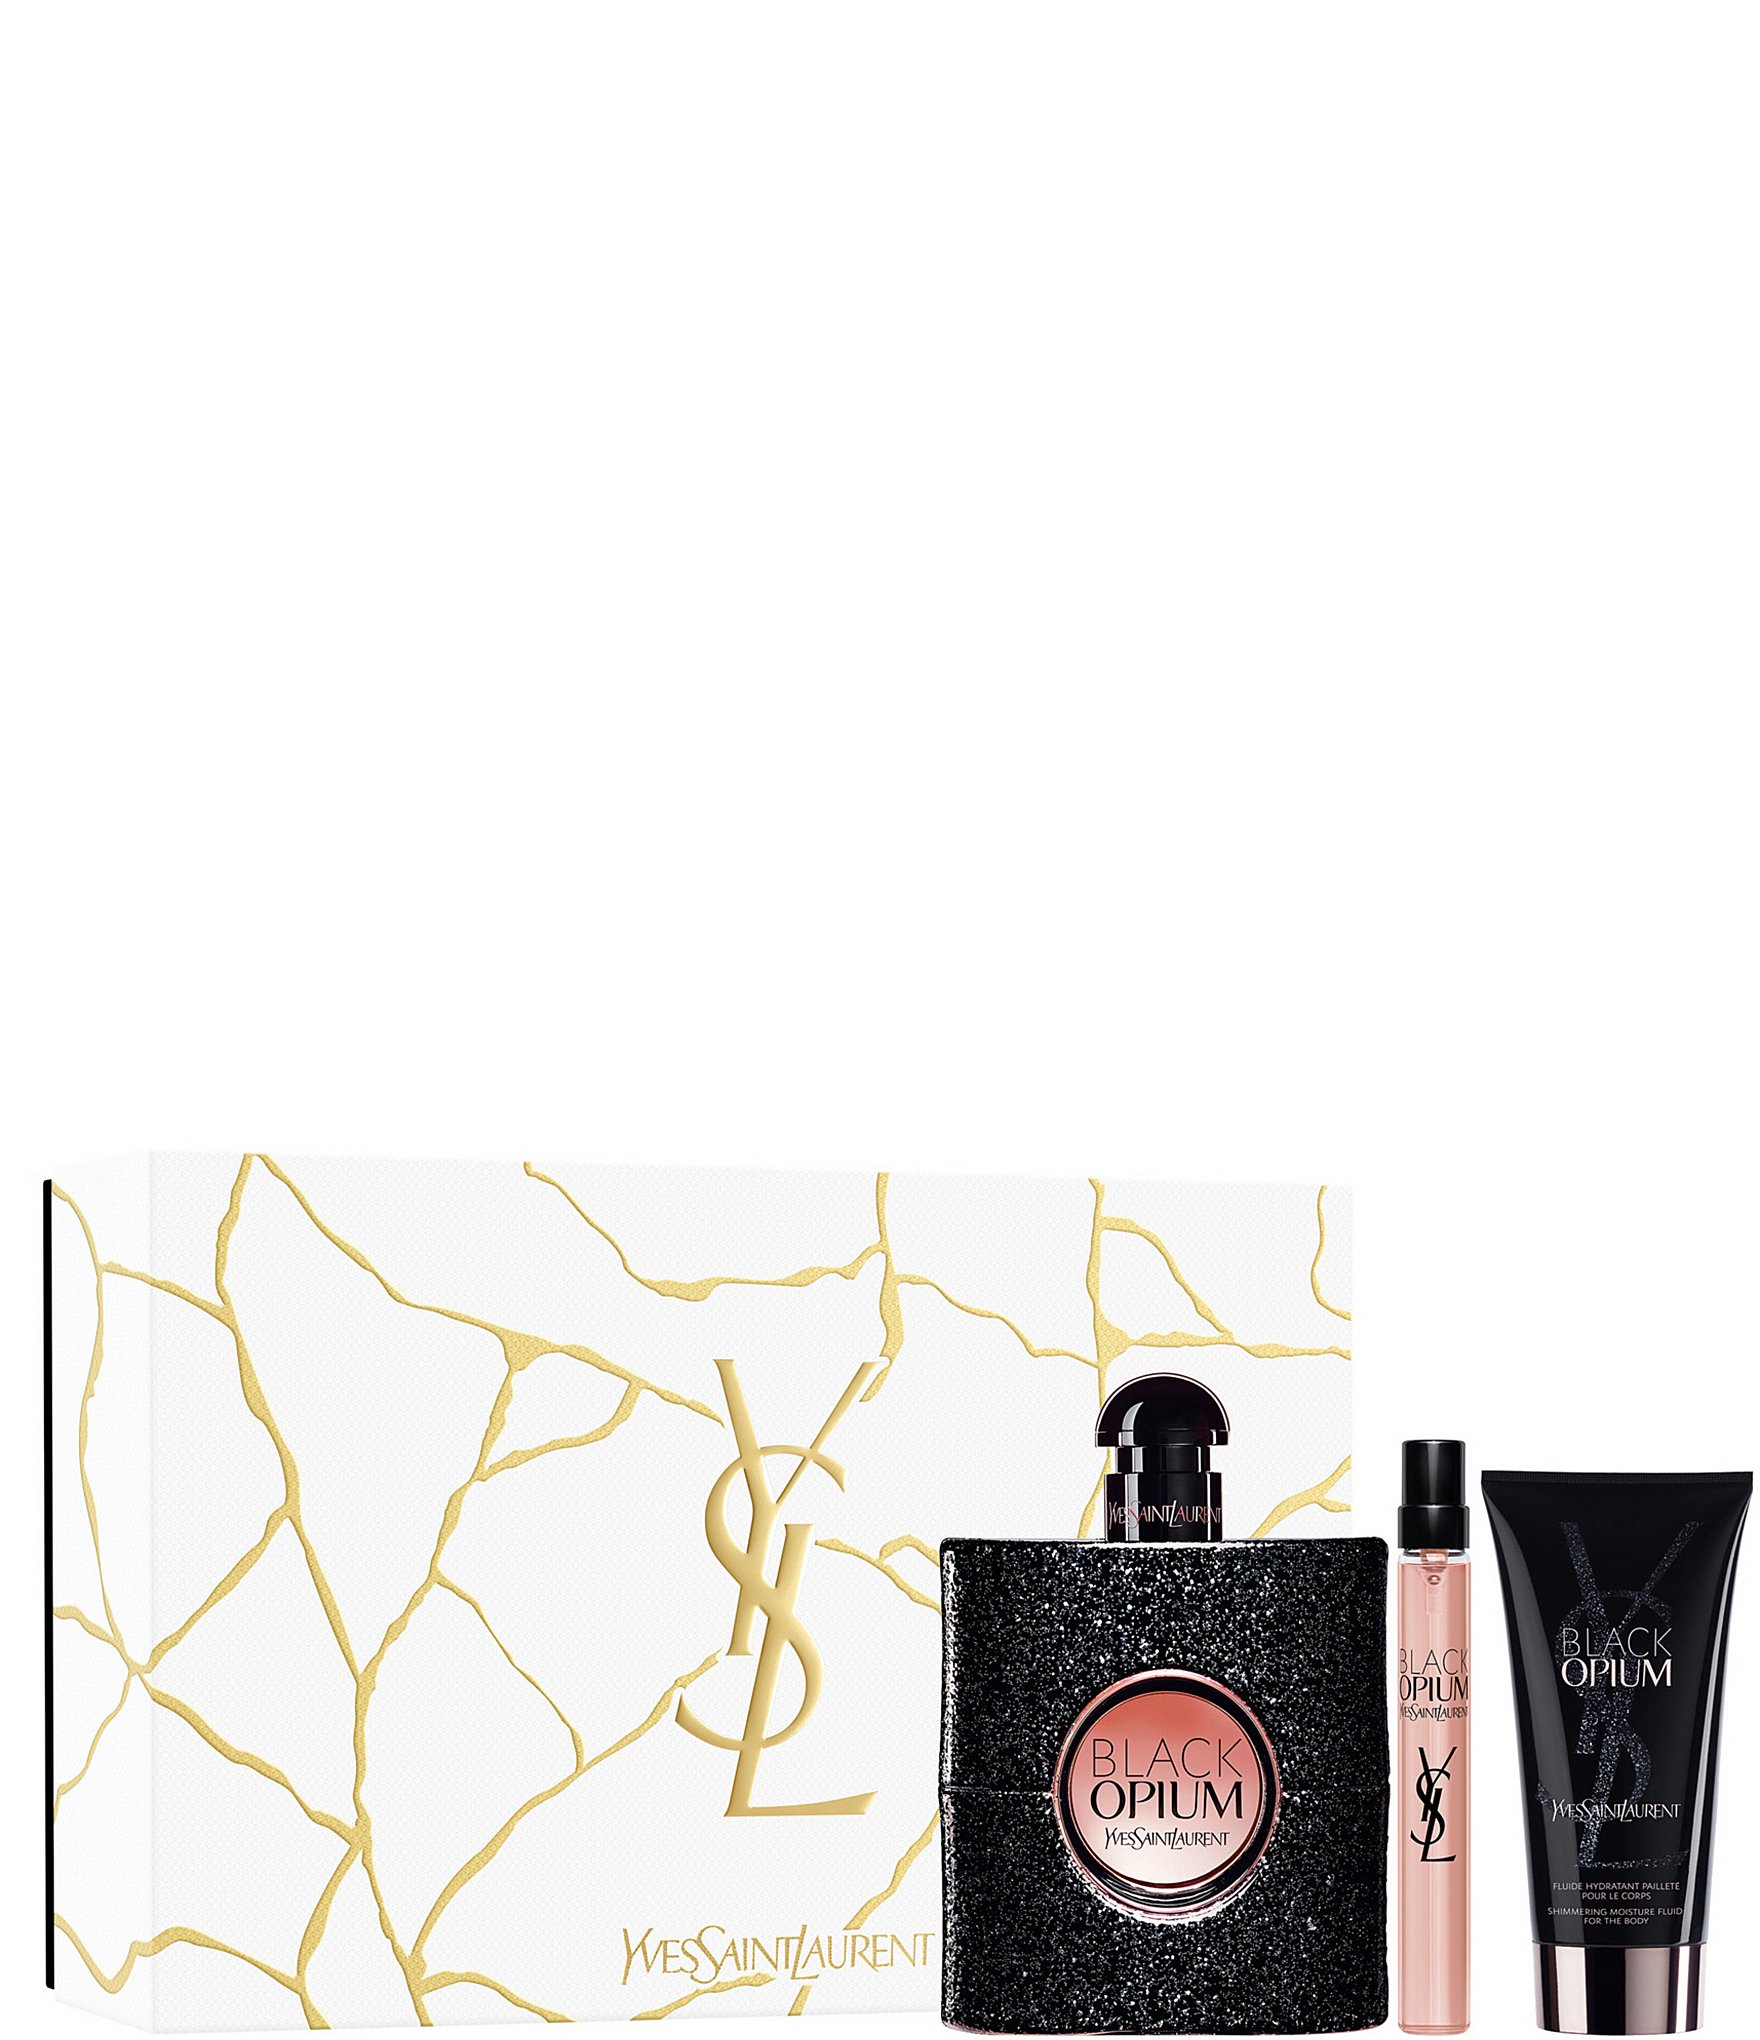 Yves Saint Laurent Ladies Black Opium Gift Set Fragrances 3614273721448 -  Fragrances & Beauty, Black Opium - Jomashop